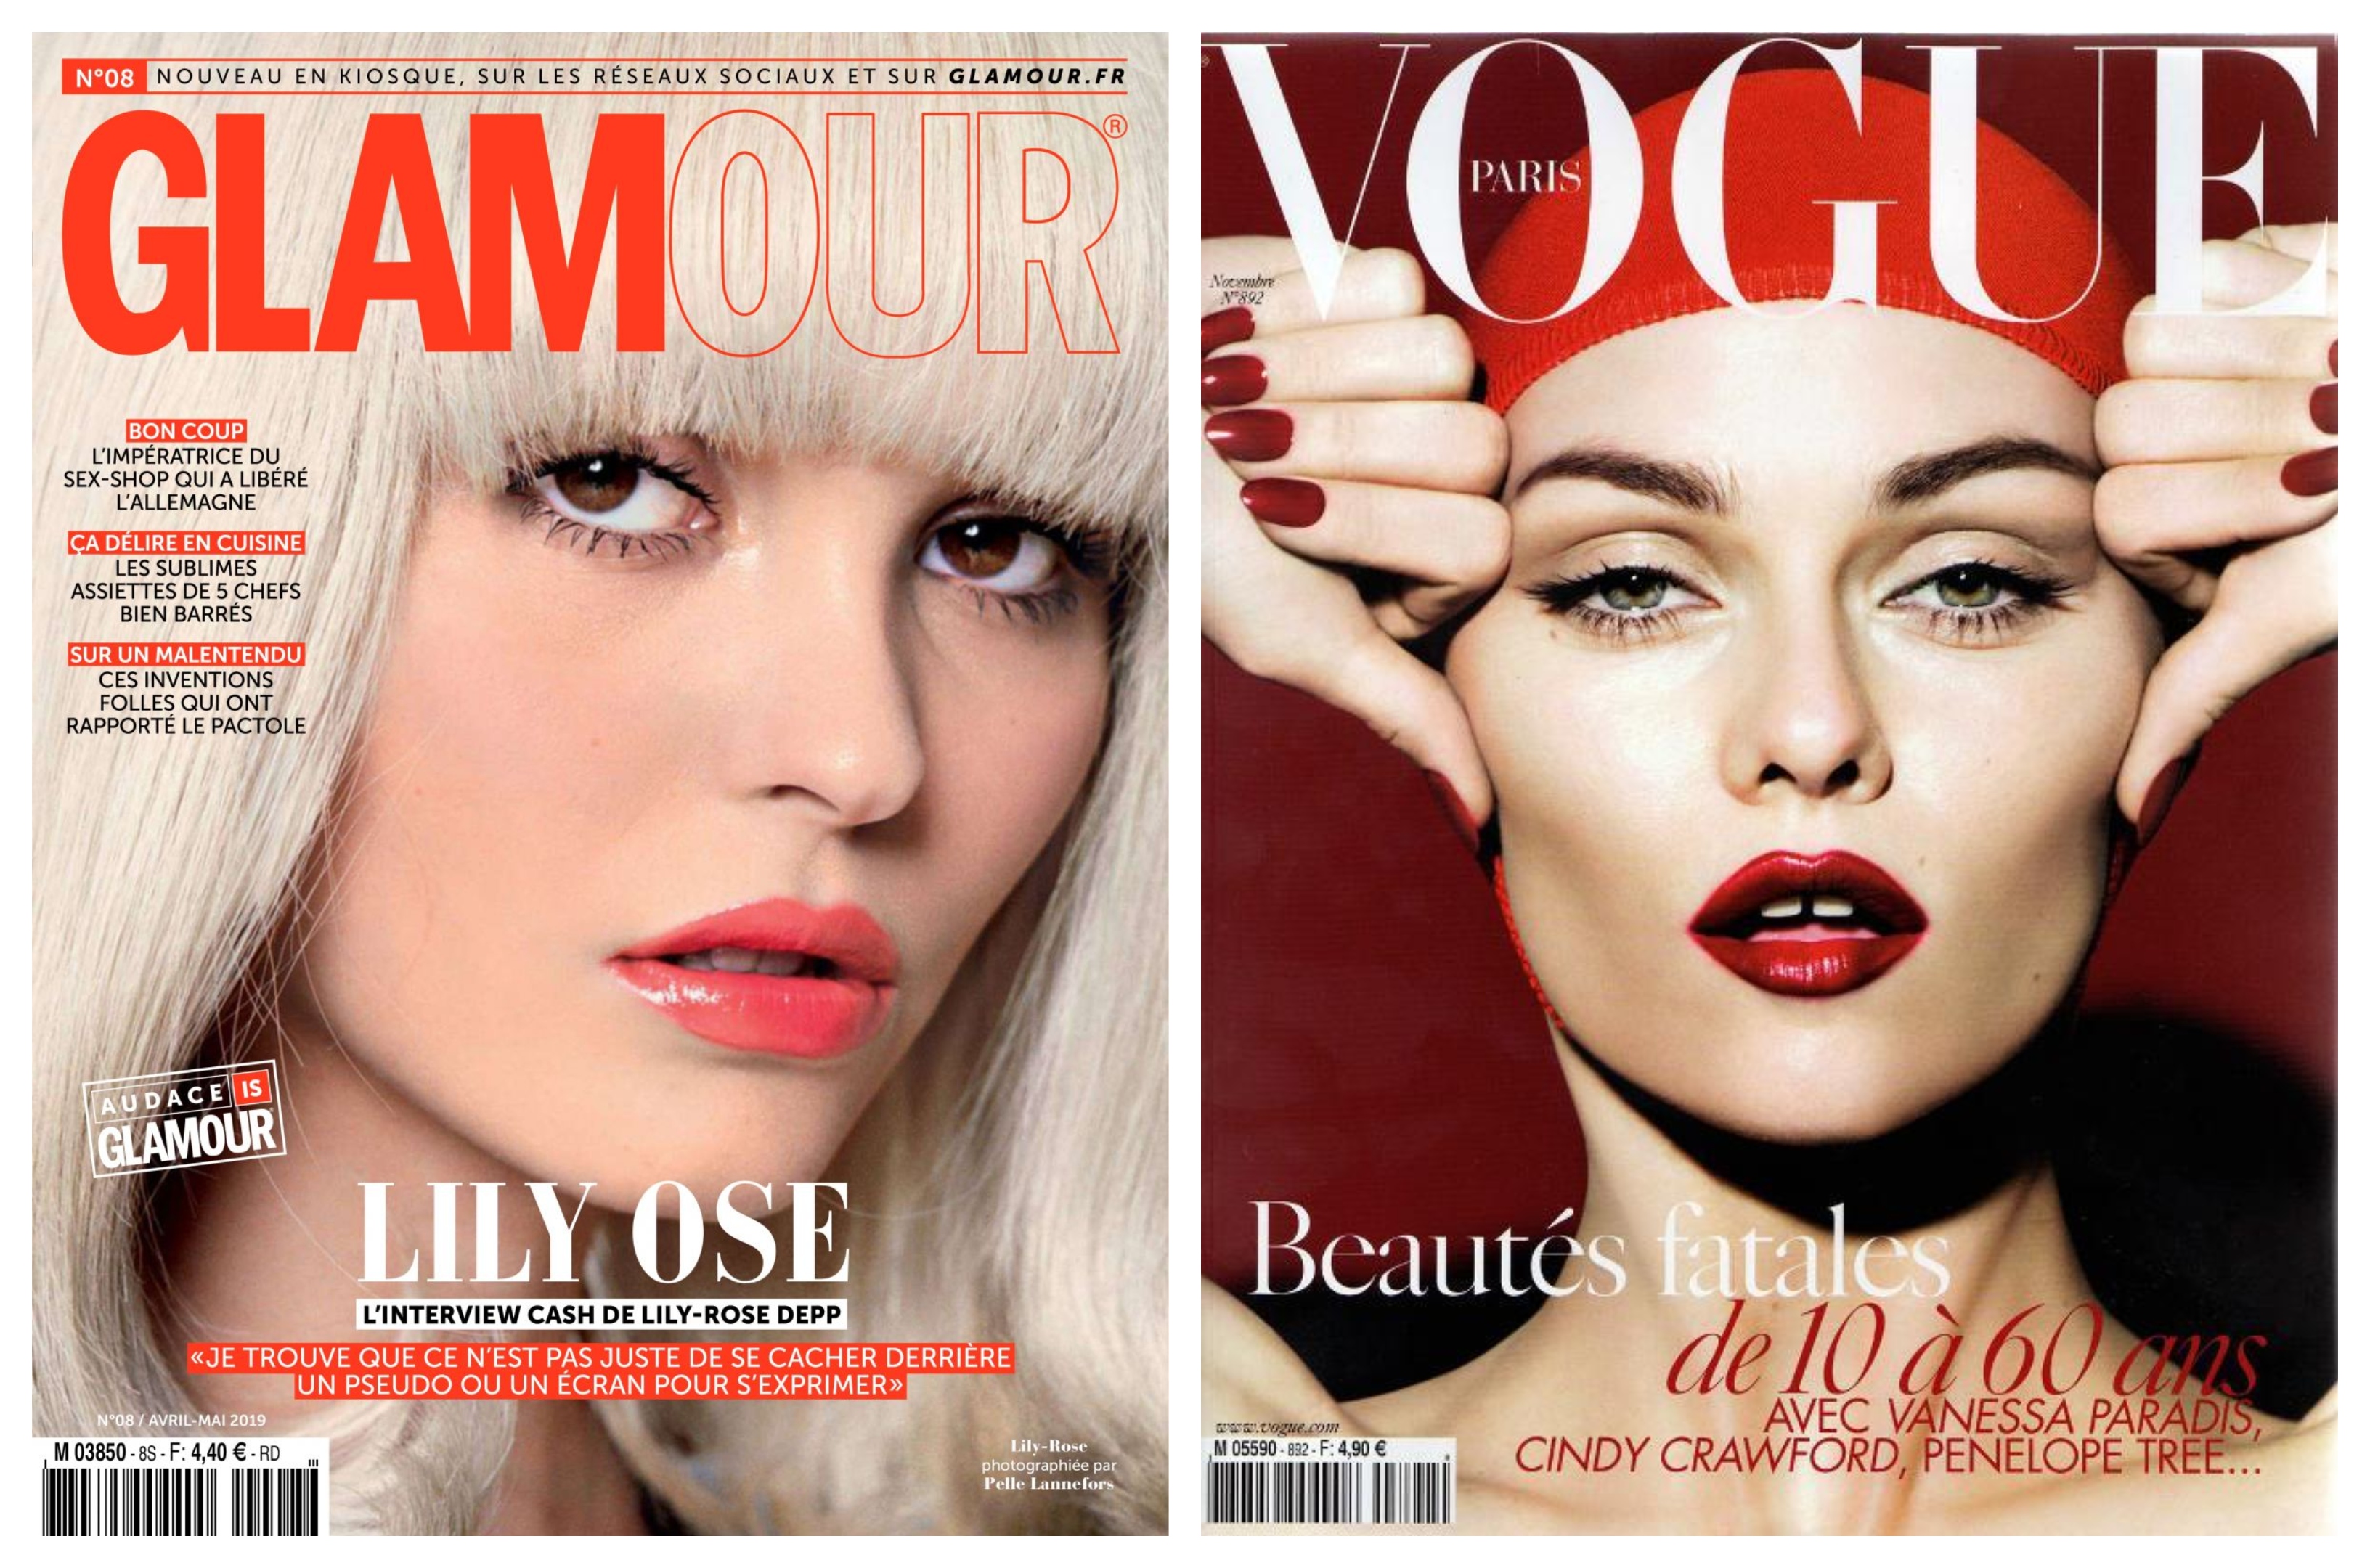 Couvertures des magazines Vogue et Glamour avec des titres difficiles à lire dans des typographies modernes.